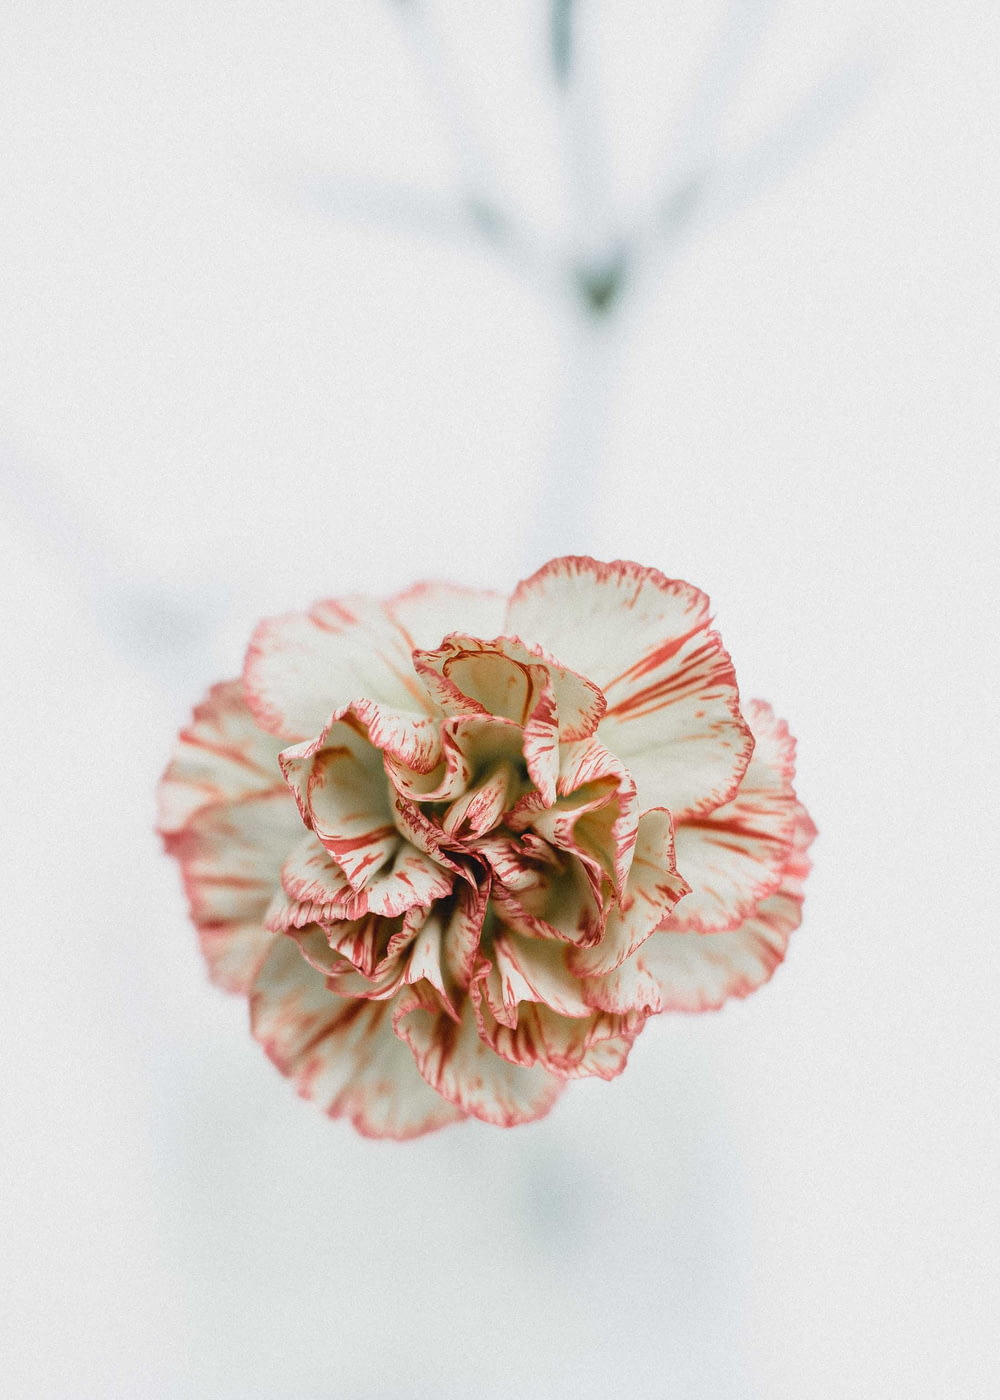 Fotografia a scatto macro di fiori rossi e bianchi